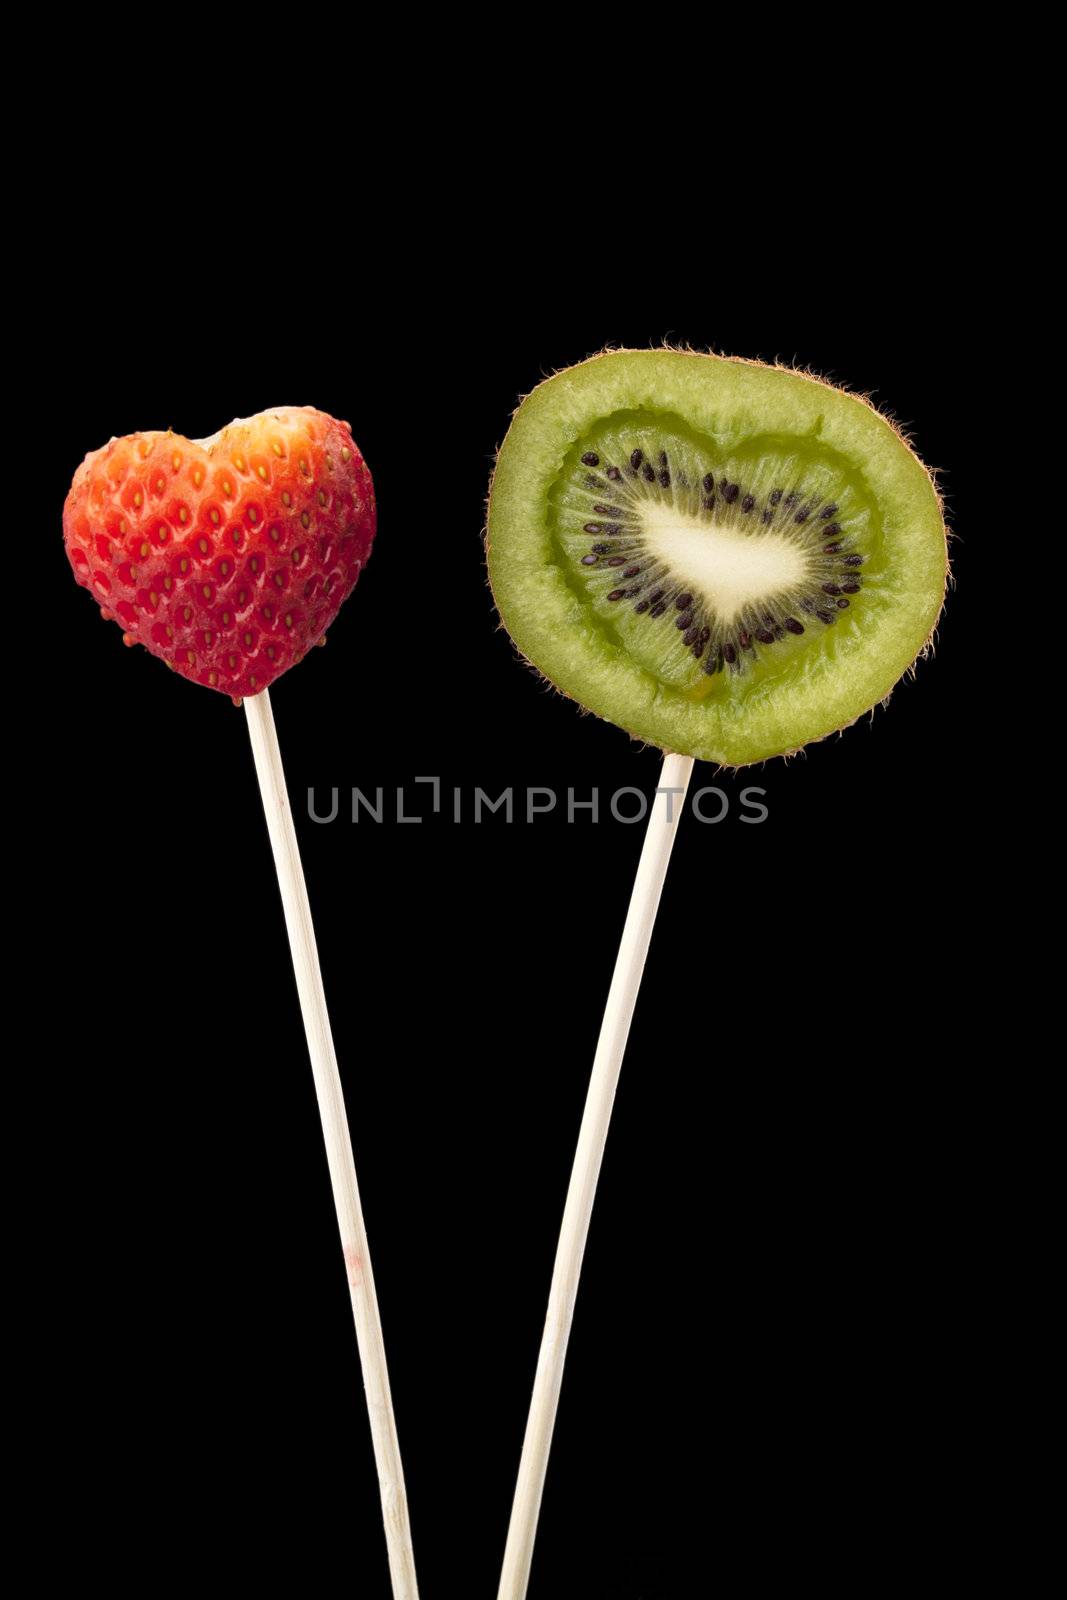 strawberry and kiwi fruit in stick by kozzi